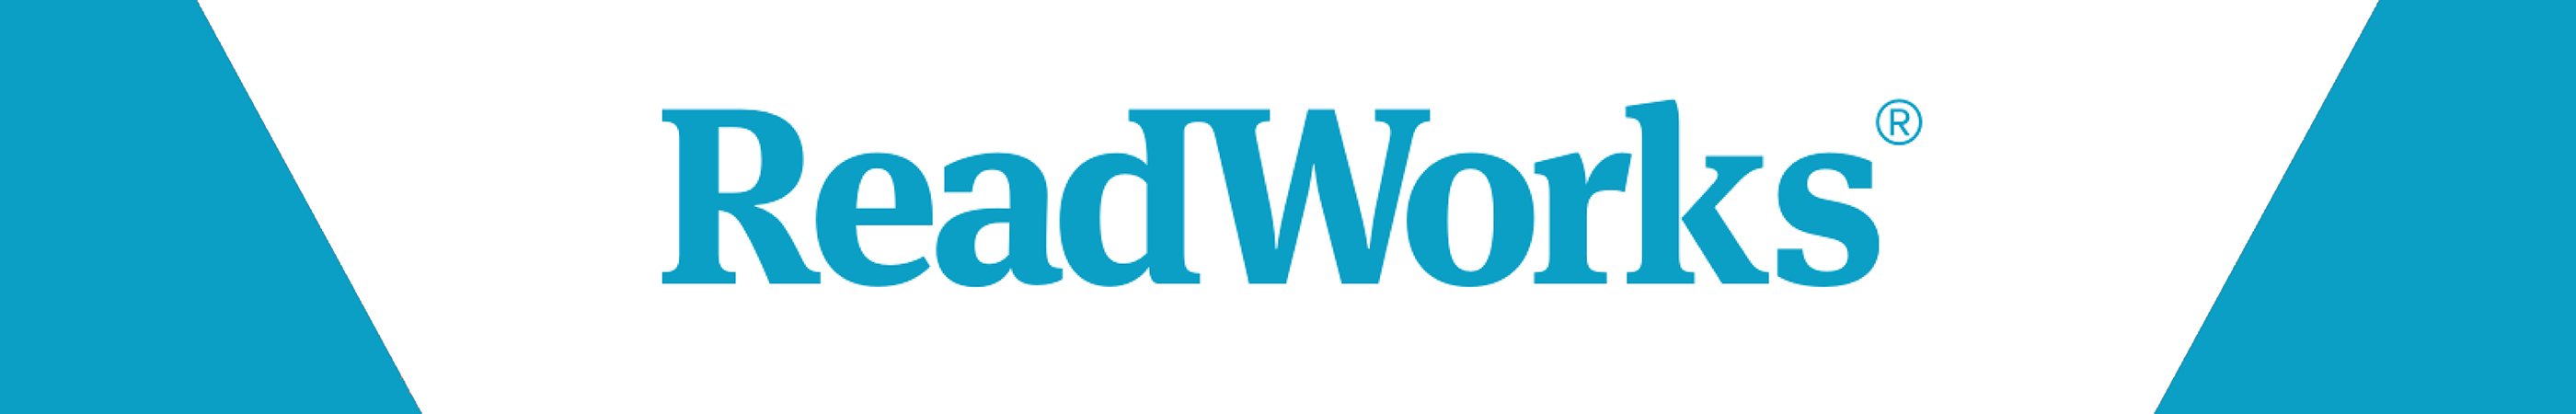 readworks-web-header_v1